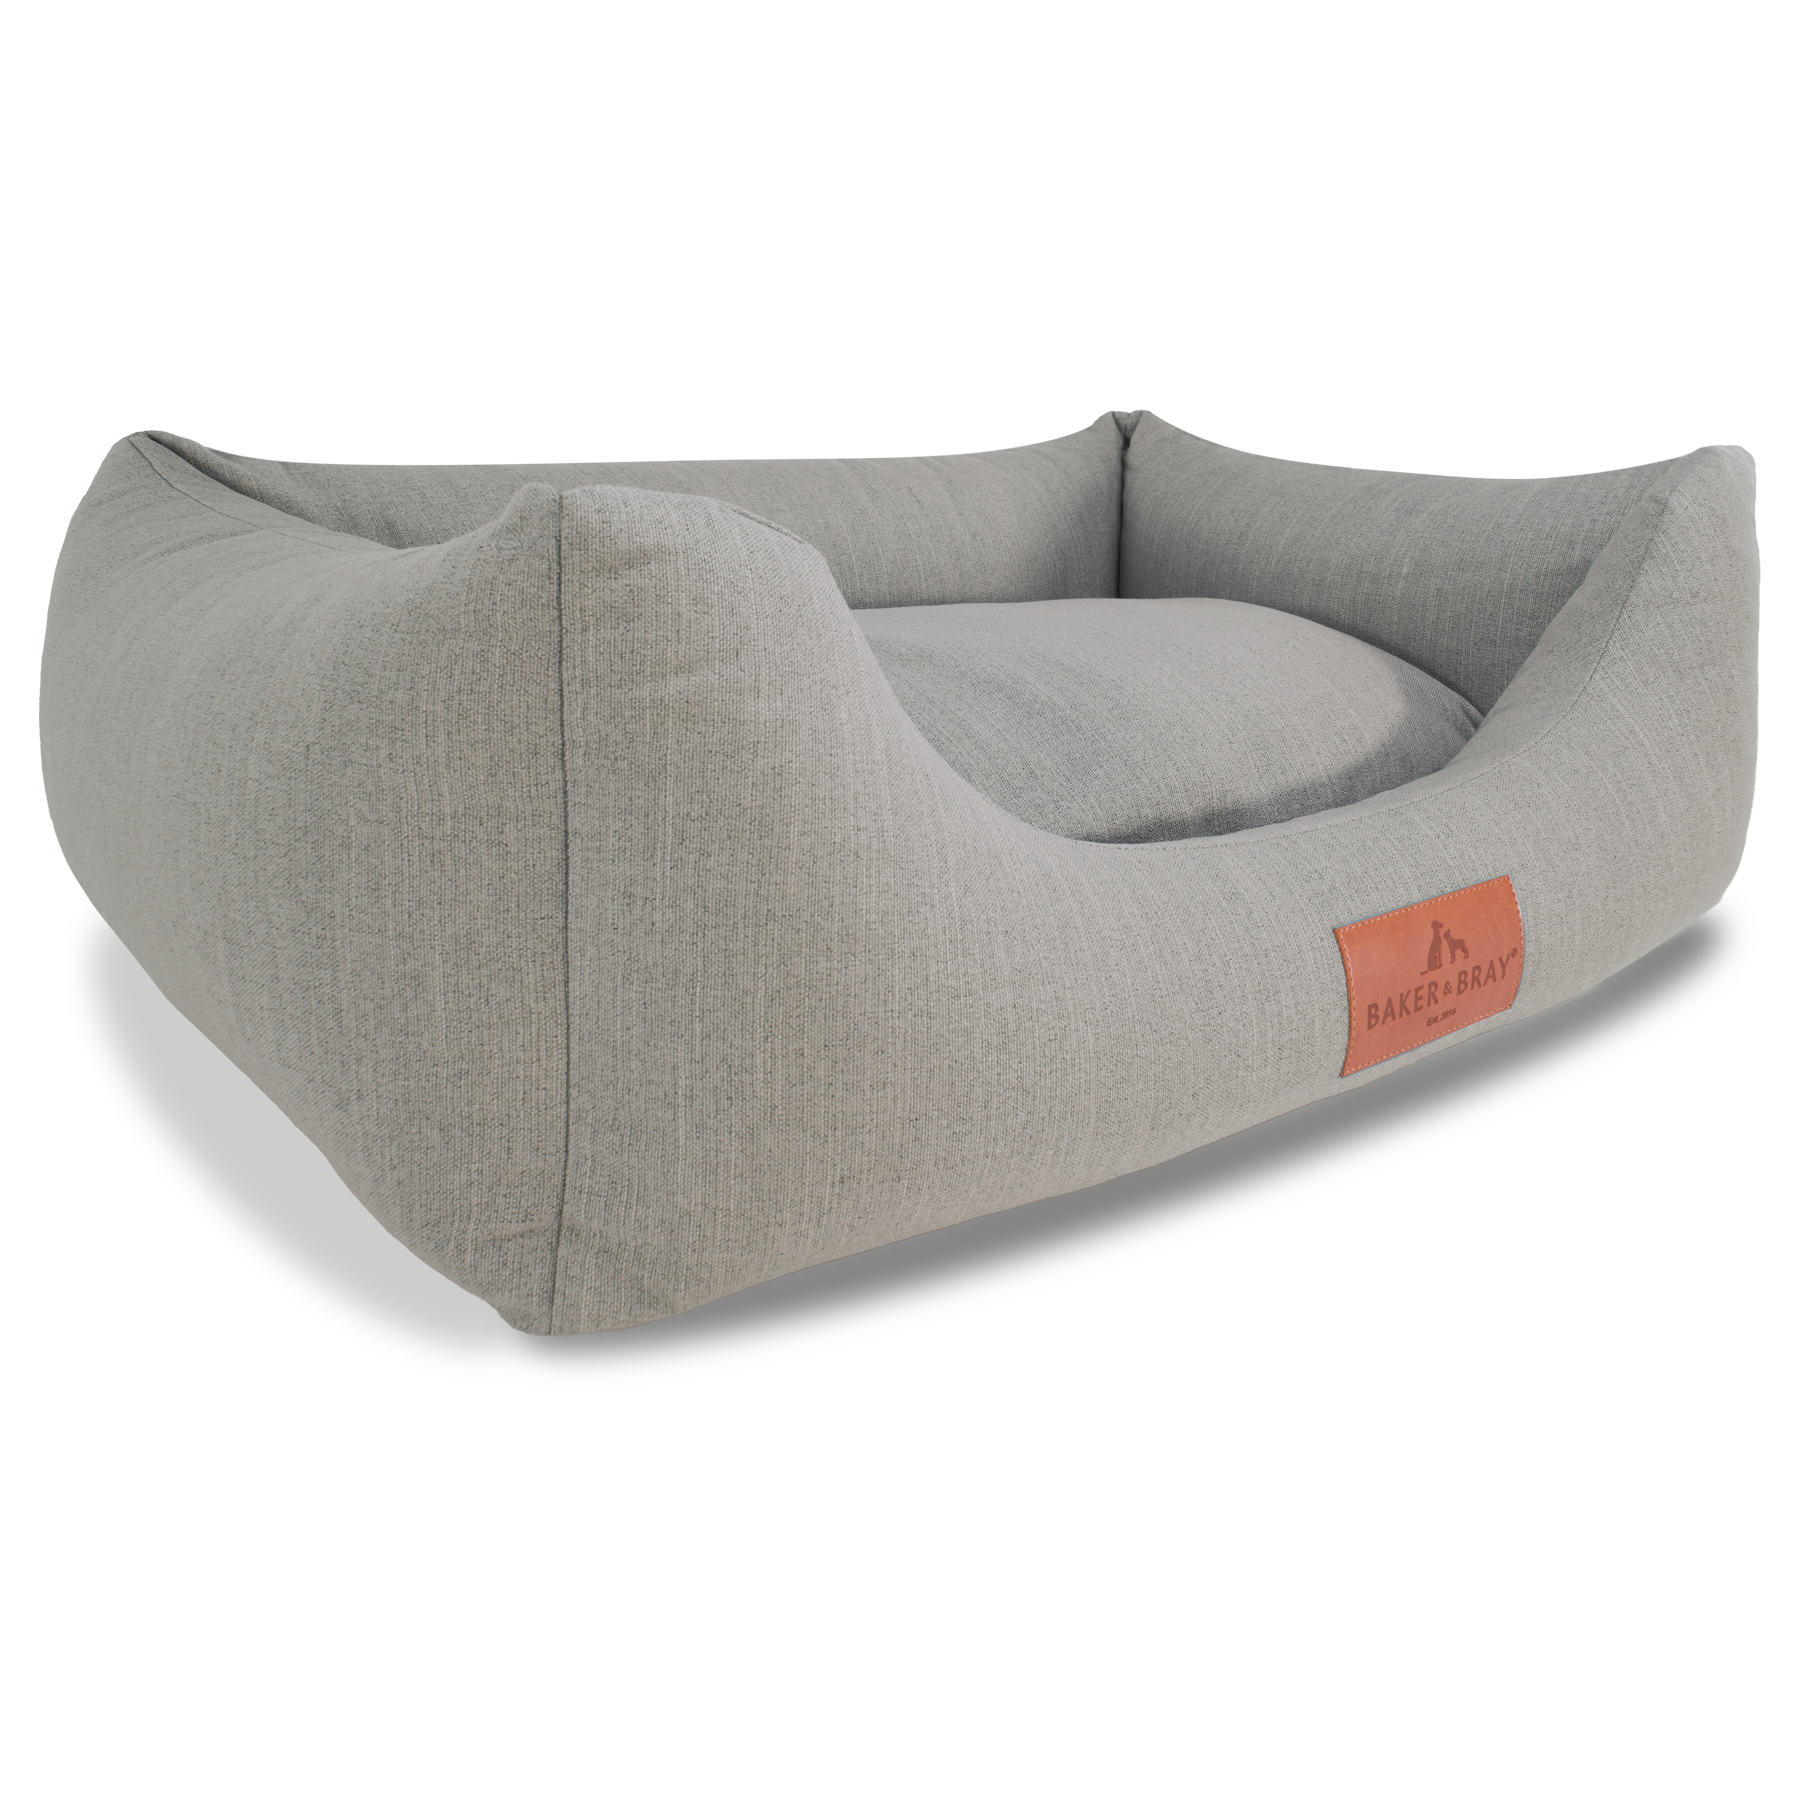 Eco Comfort Orthopaedic Luxury Dog Bed, Warm Grey